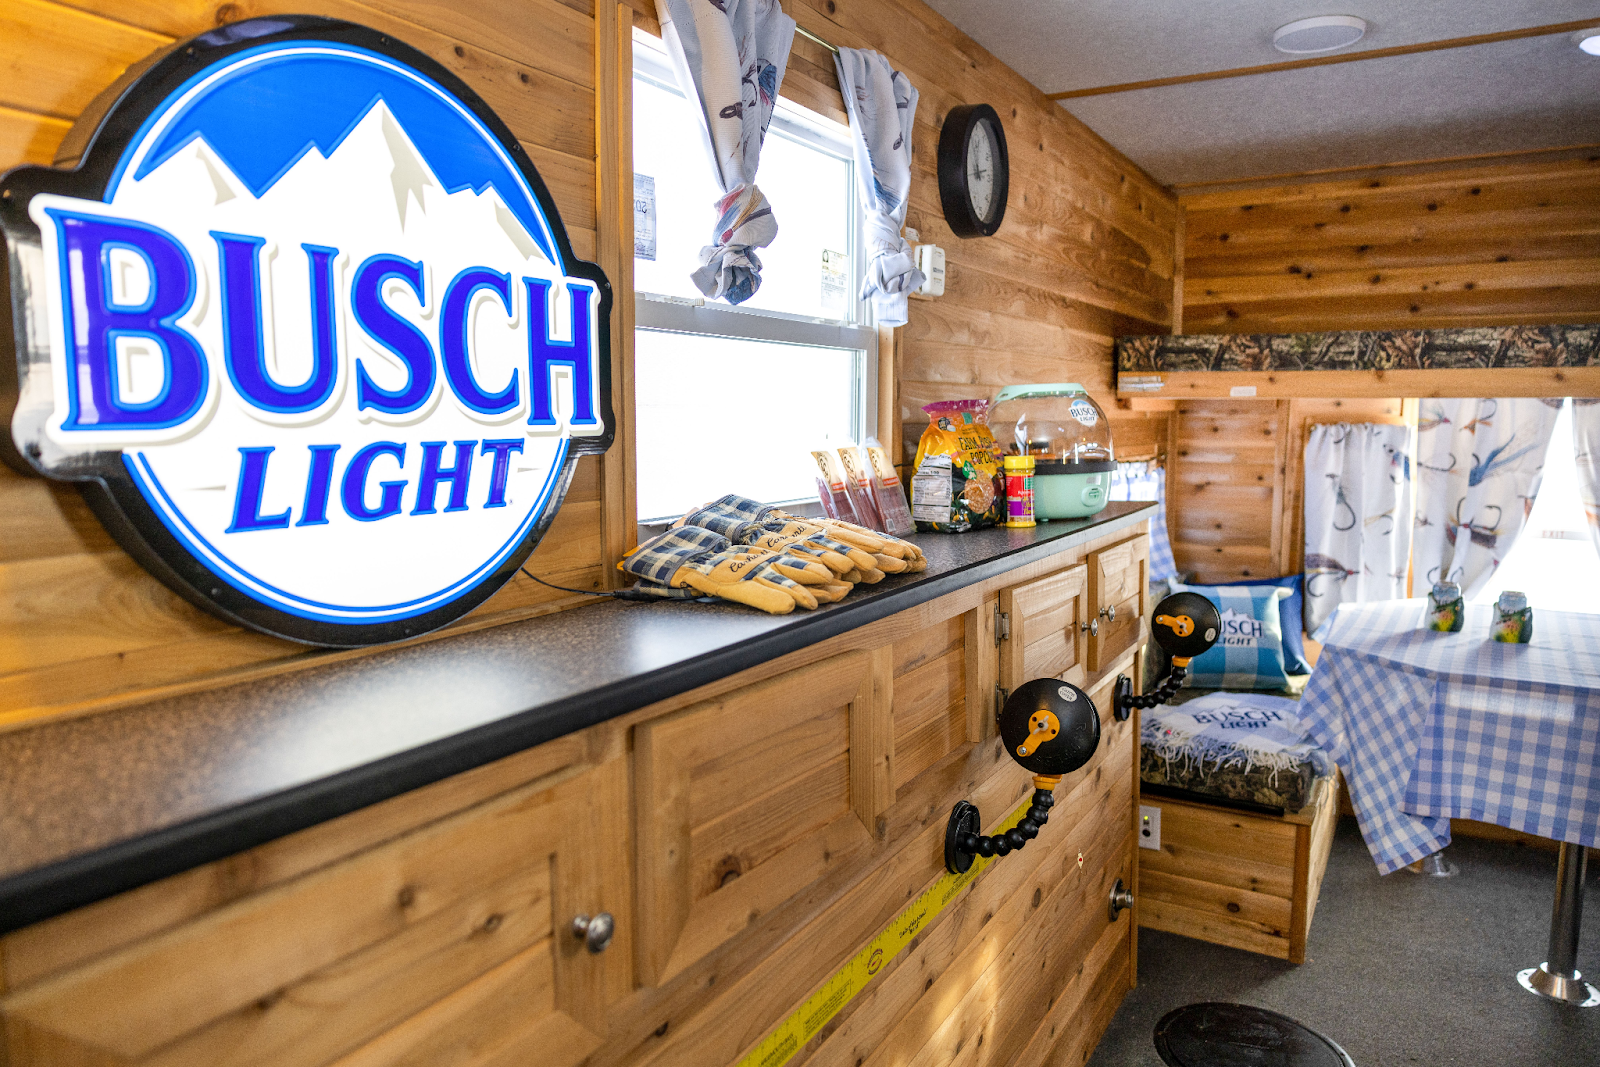 Win A Week-Long Minnesota Ice Fishing Trip In The Busch Light Ice Shanty